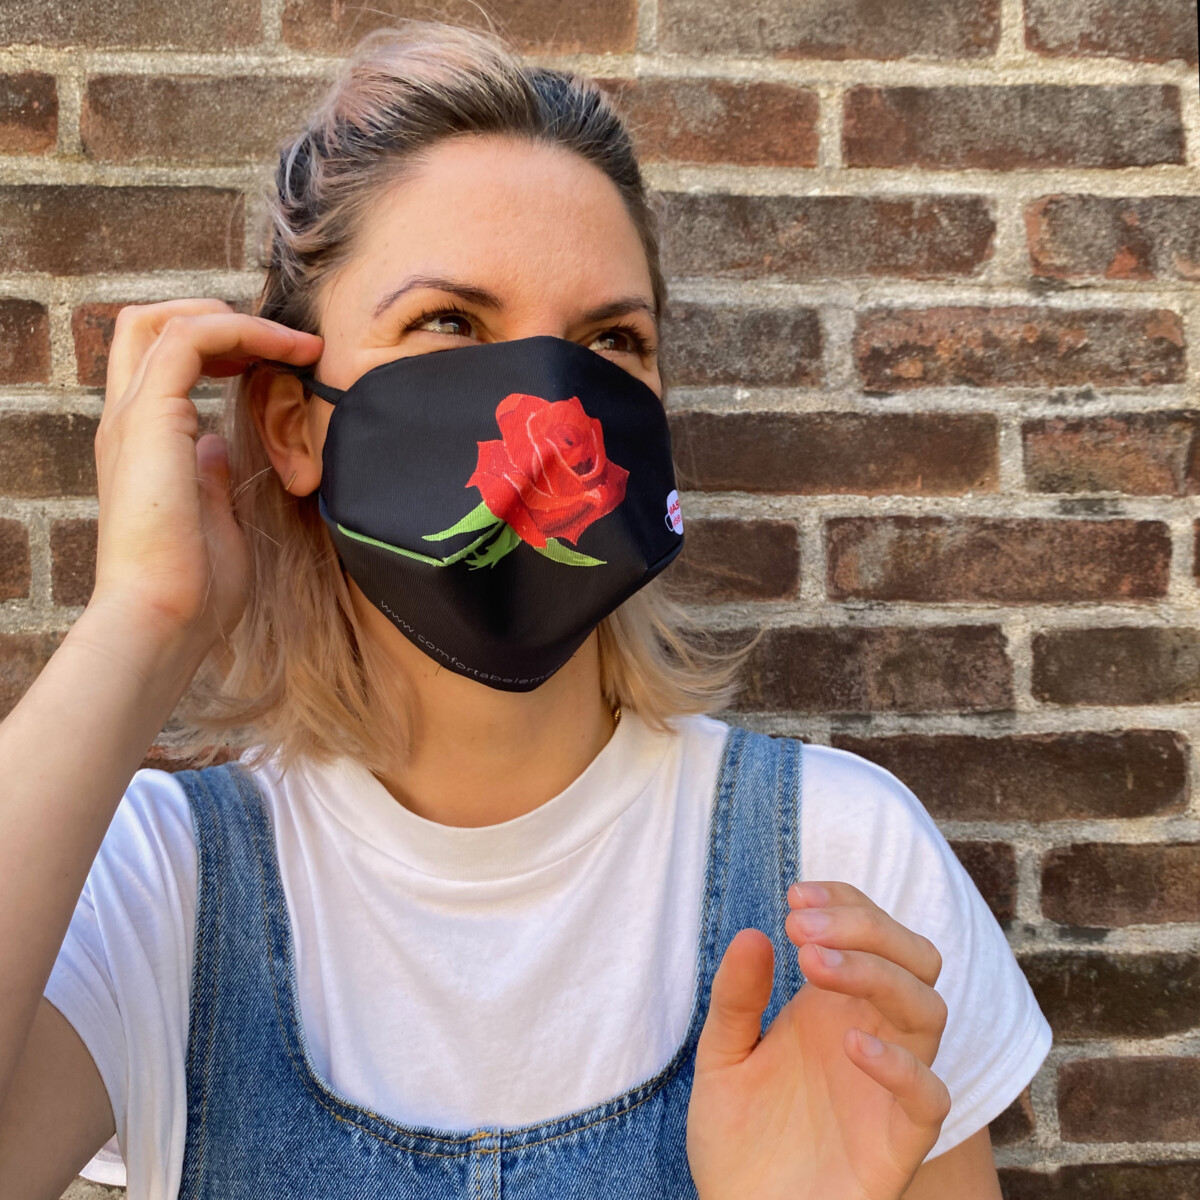 Maskwise duurzaam herbruikbaar mondkapje met exclusieve print